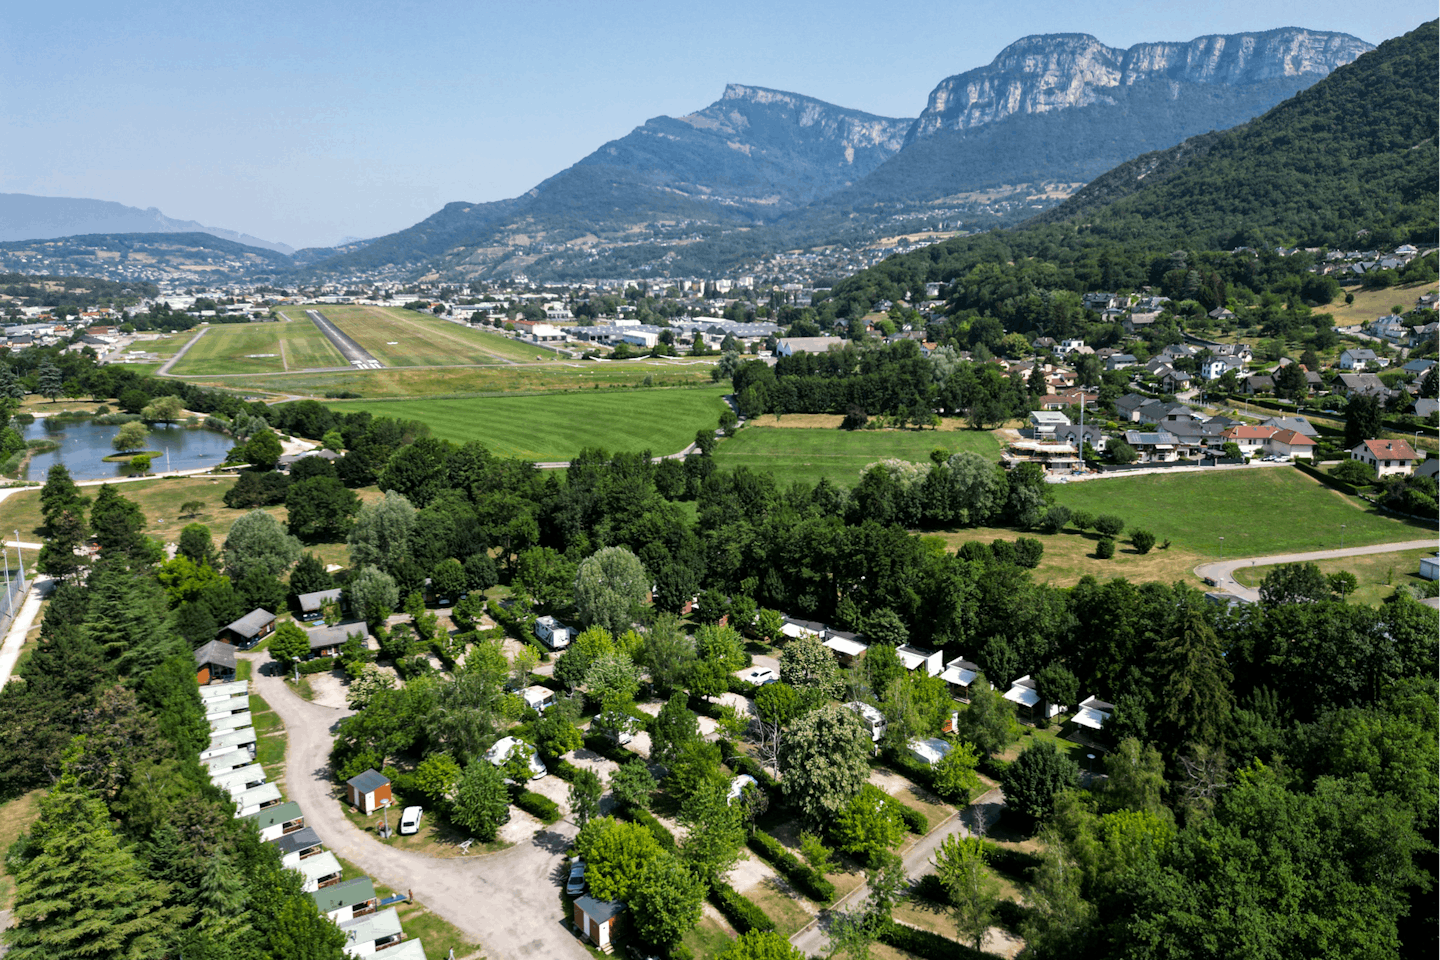 Family’s Camping Le Savoy  - Luftaufnahme des Campingplatzes umgeben von Bergen und Wald